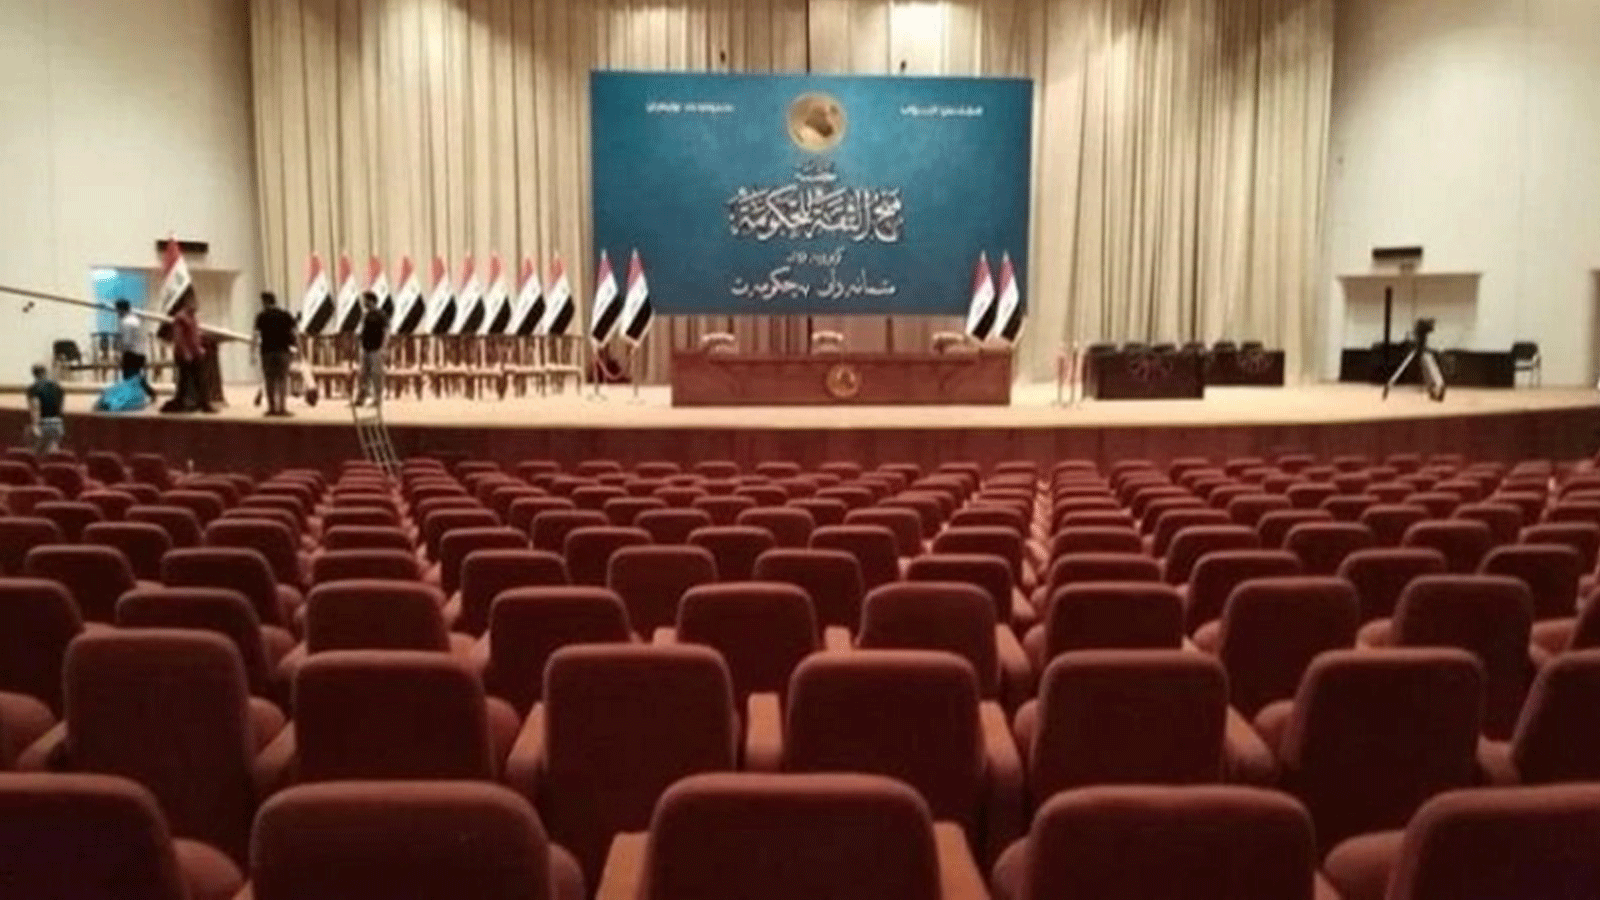 مبنى البرلمان العراقي ينتظر نوابه الجدد للانعقاد وانتخاب رئيس للبلاد (تويتر)